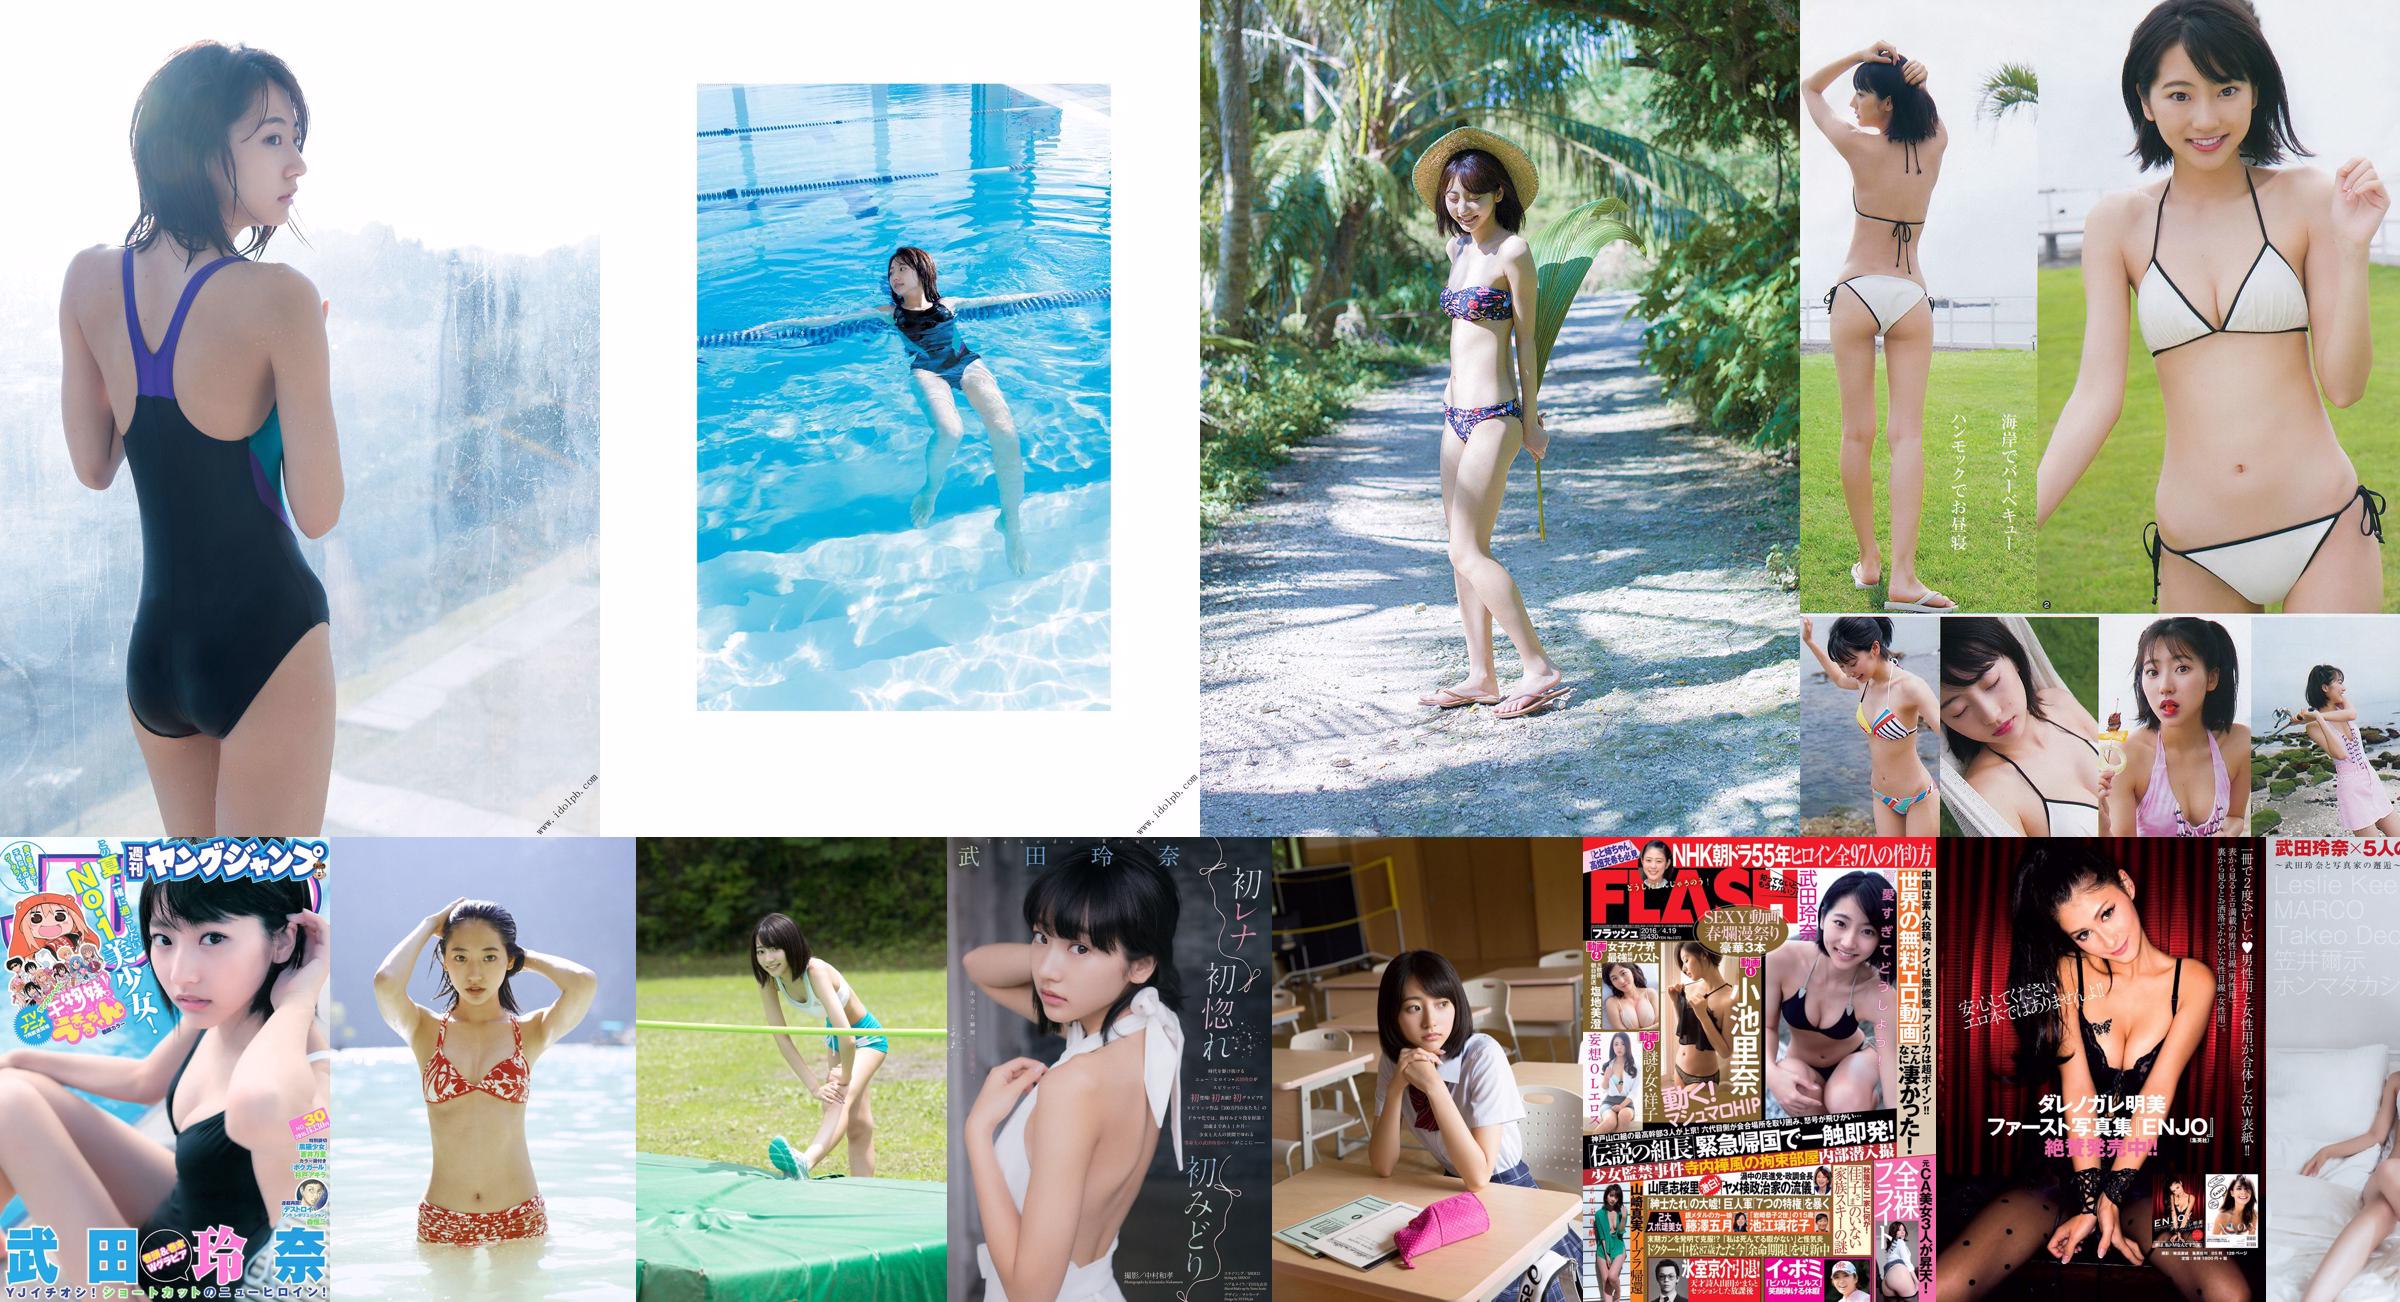 Rena Takeda und Reiko Fujiwara [Weekly Young Jump] 2015 No.41 Photo Magazine No.7d7320 Seite 3